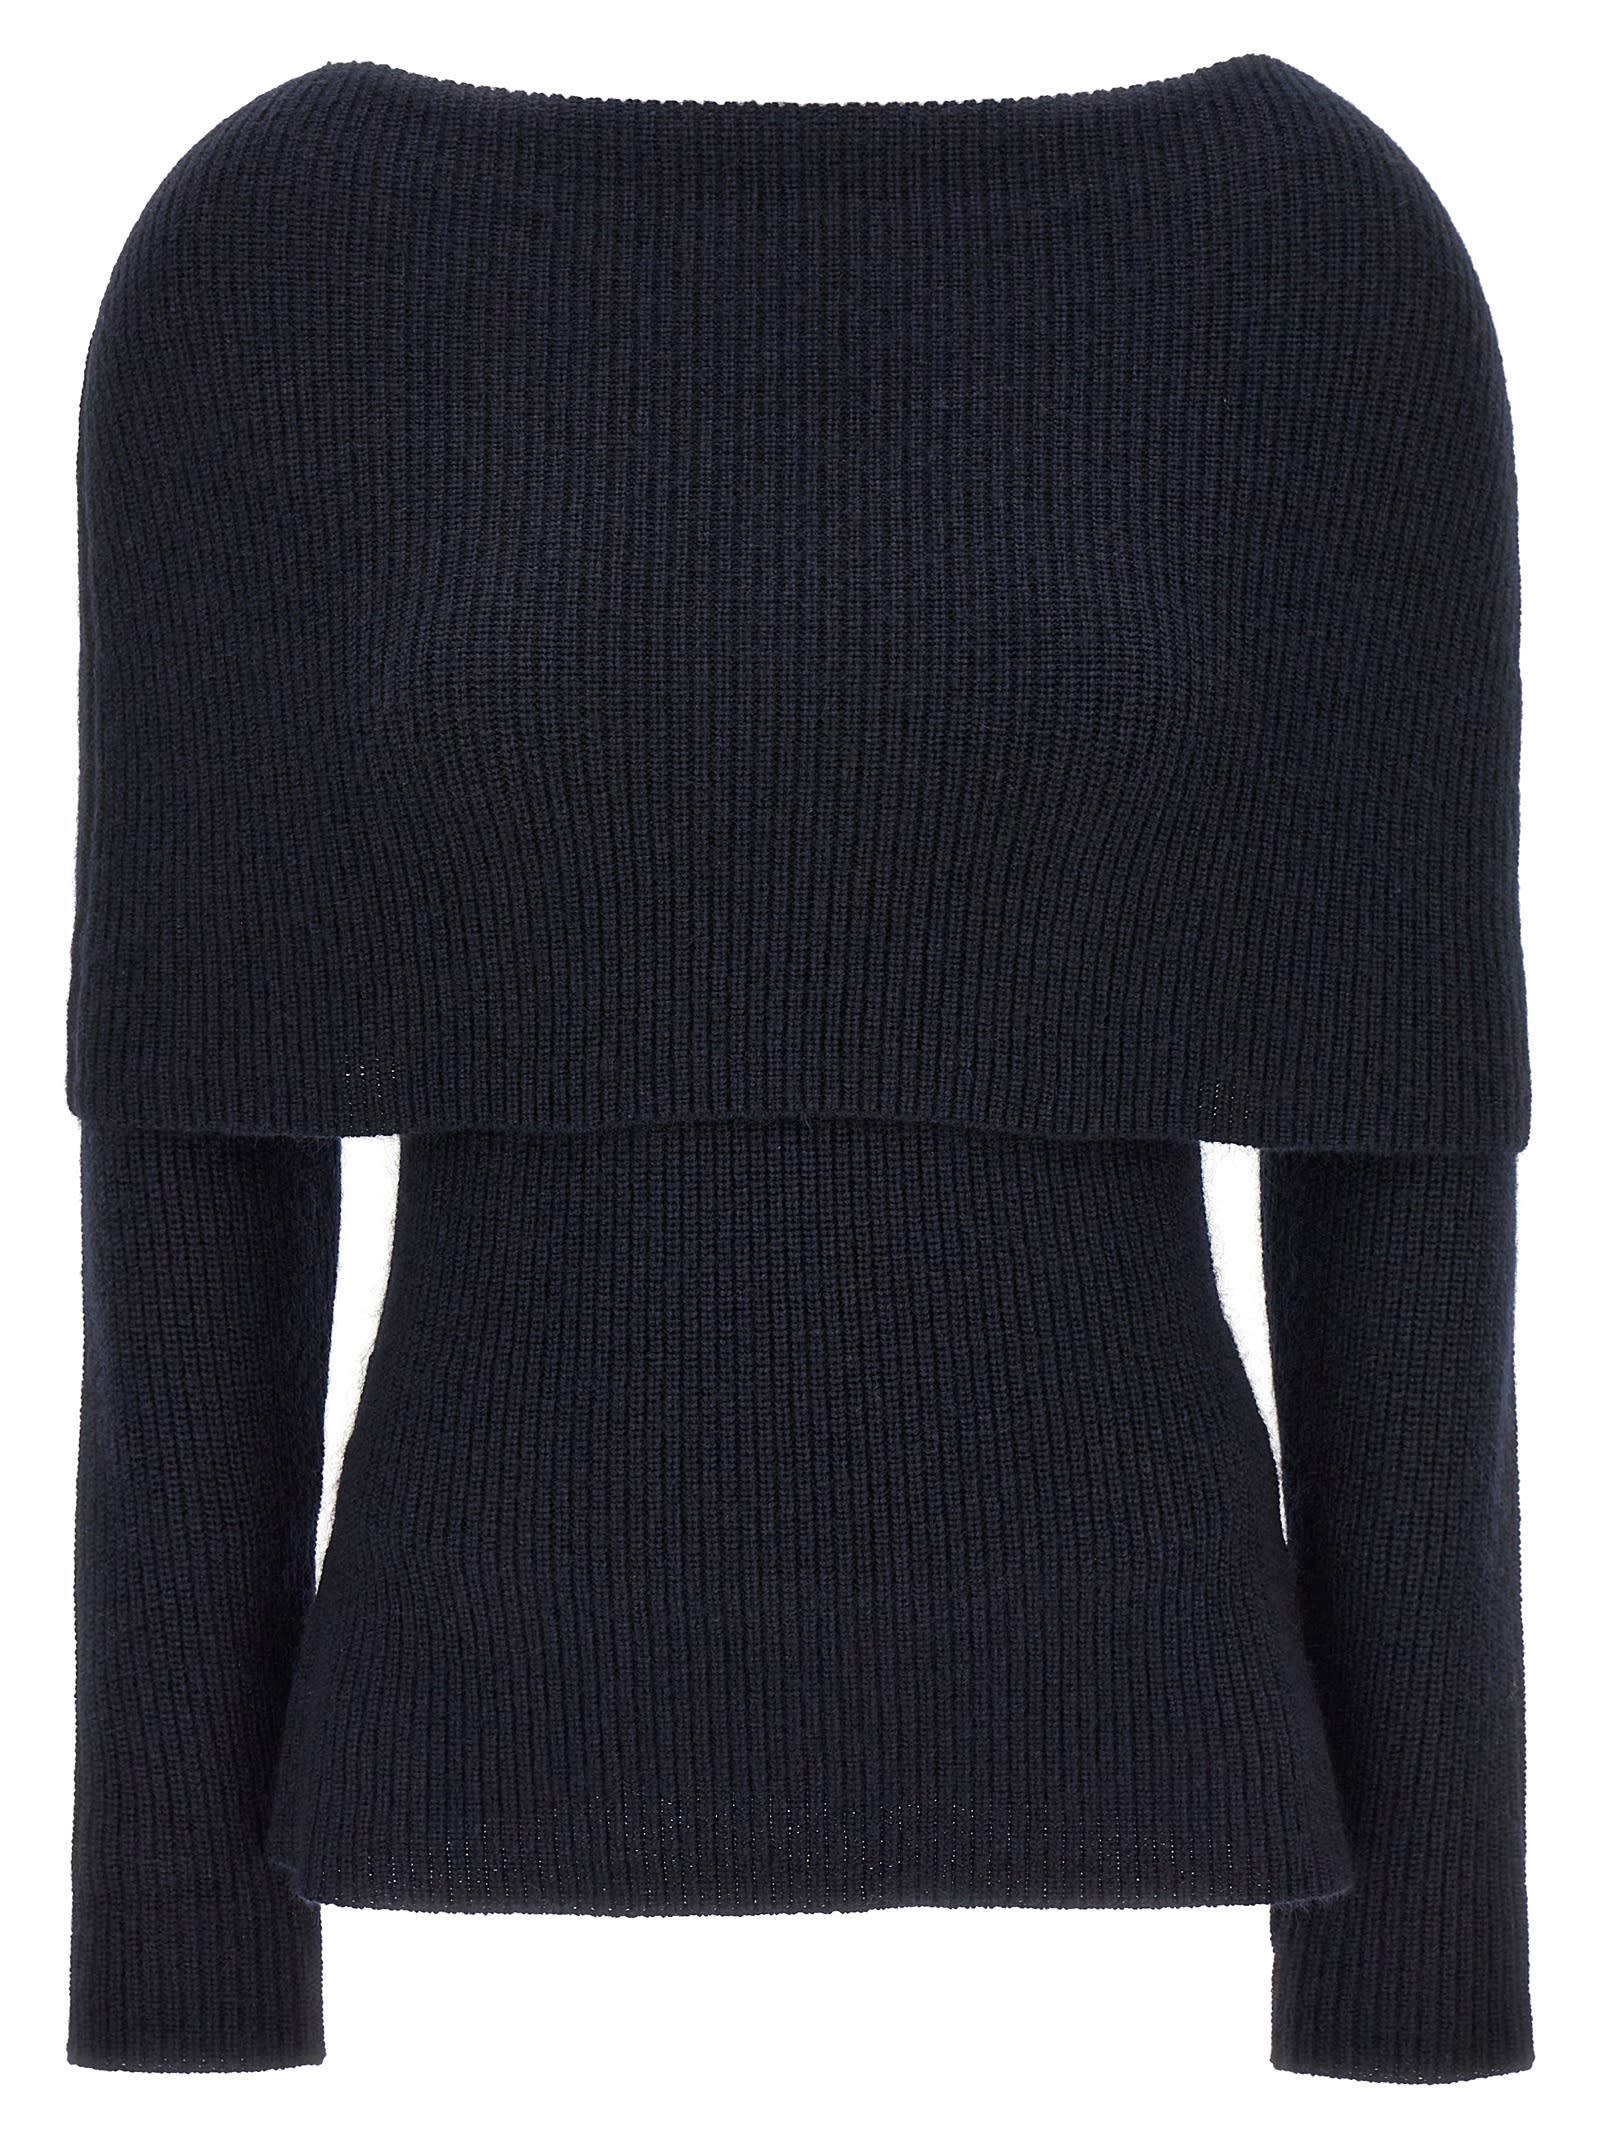 Soft Neckline Sweater